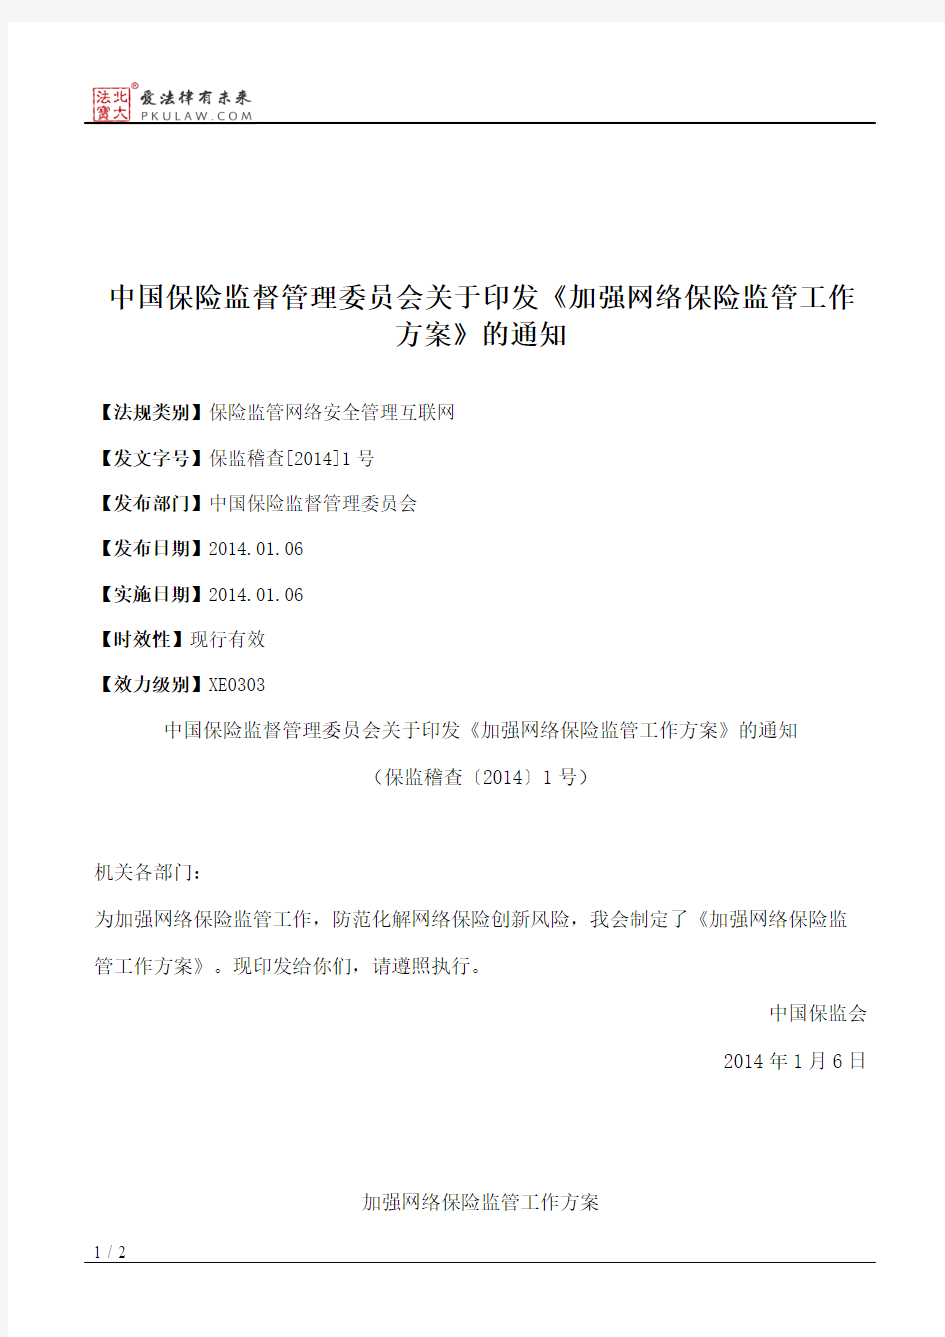 中国保险监督管理委员会关于印发《加强网络保险监管工作方案》的通知